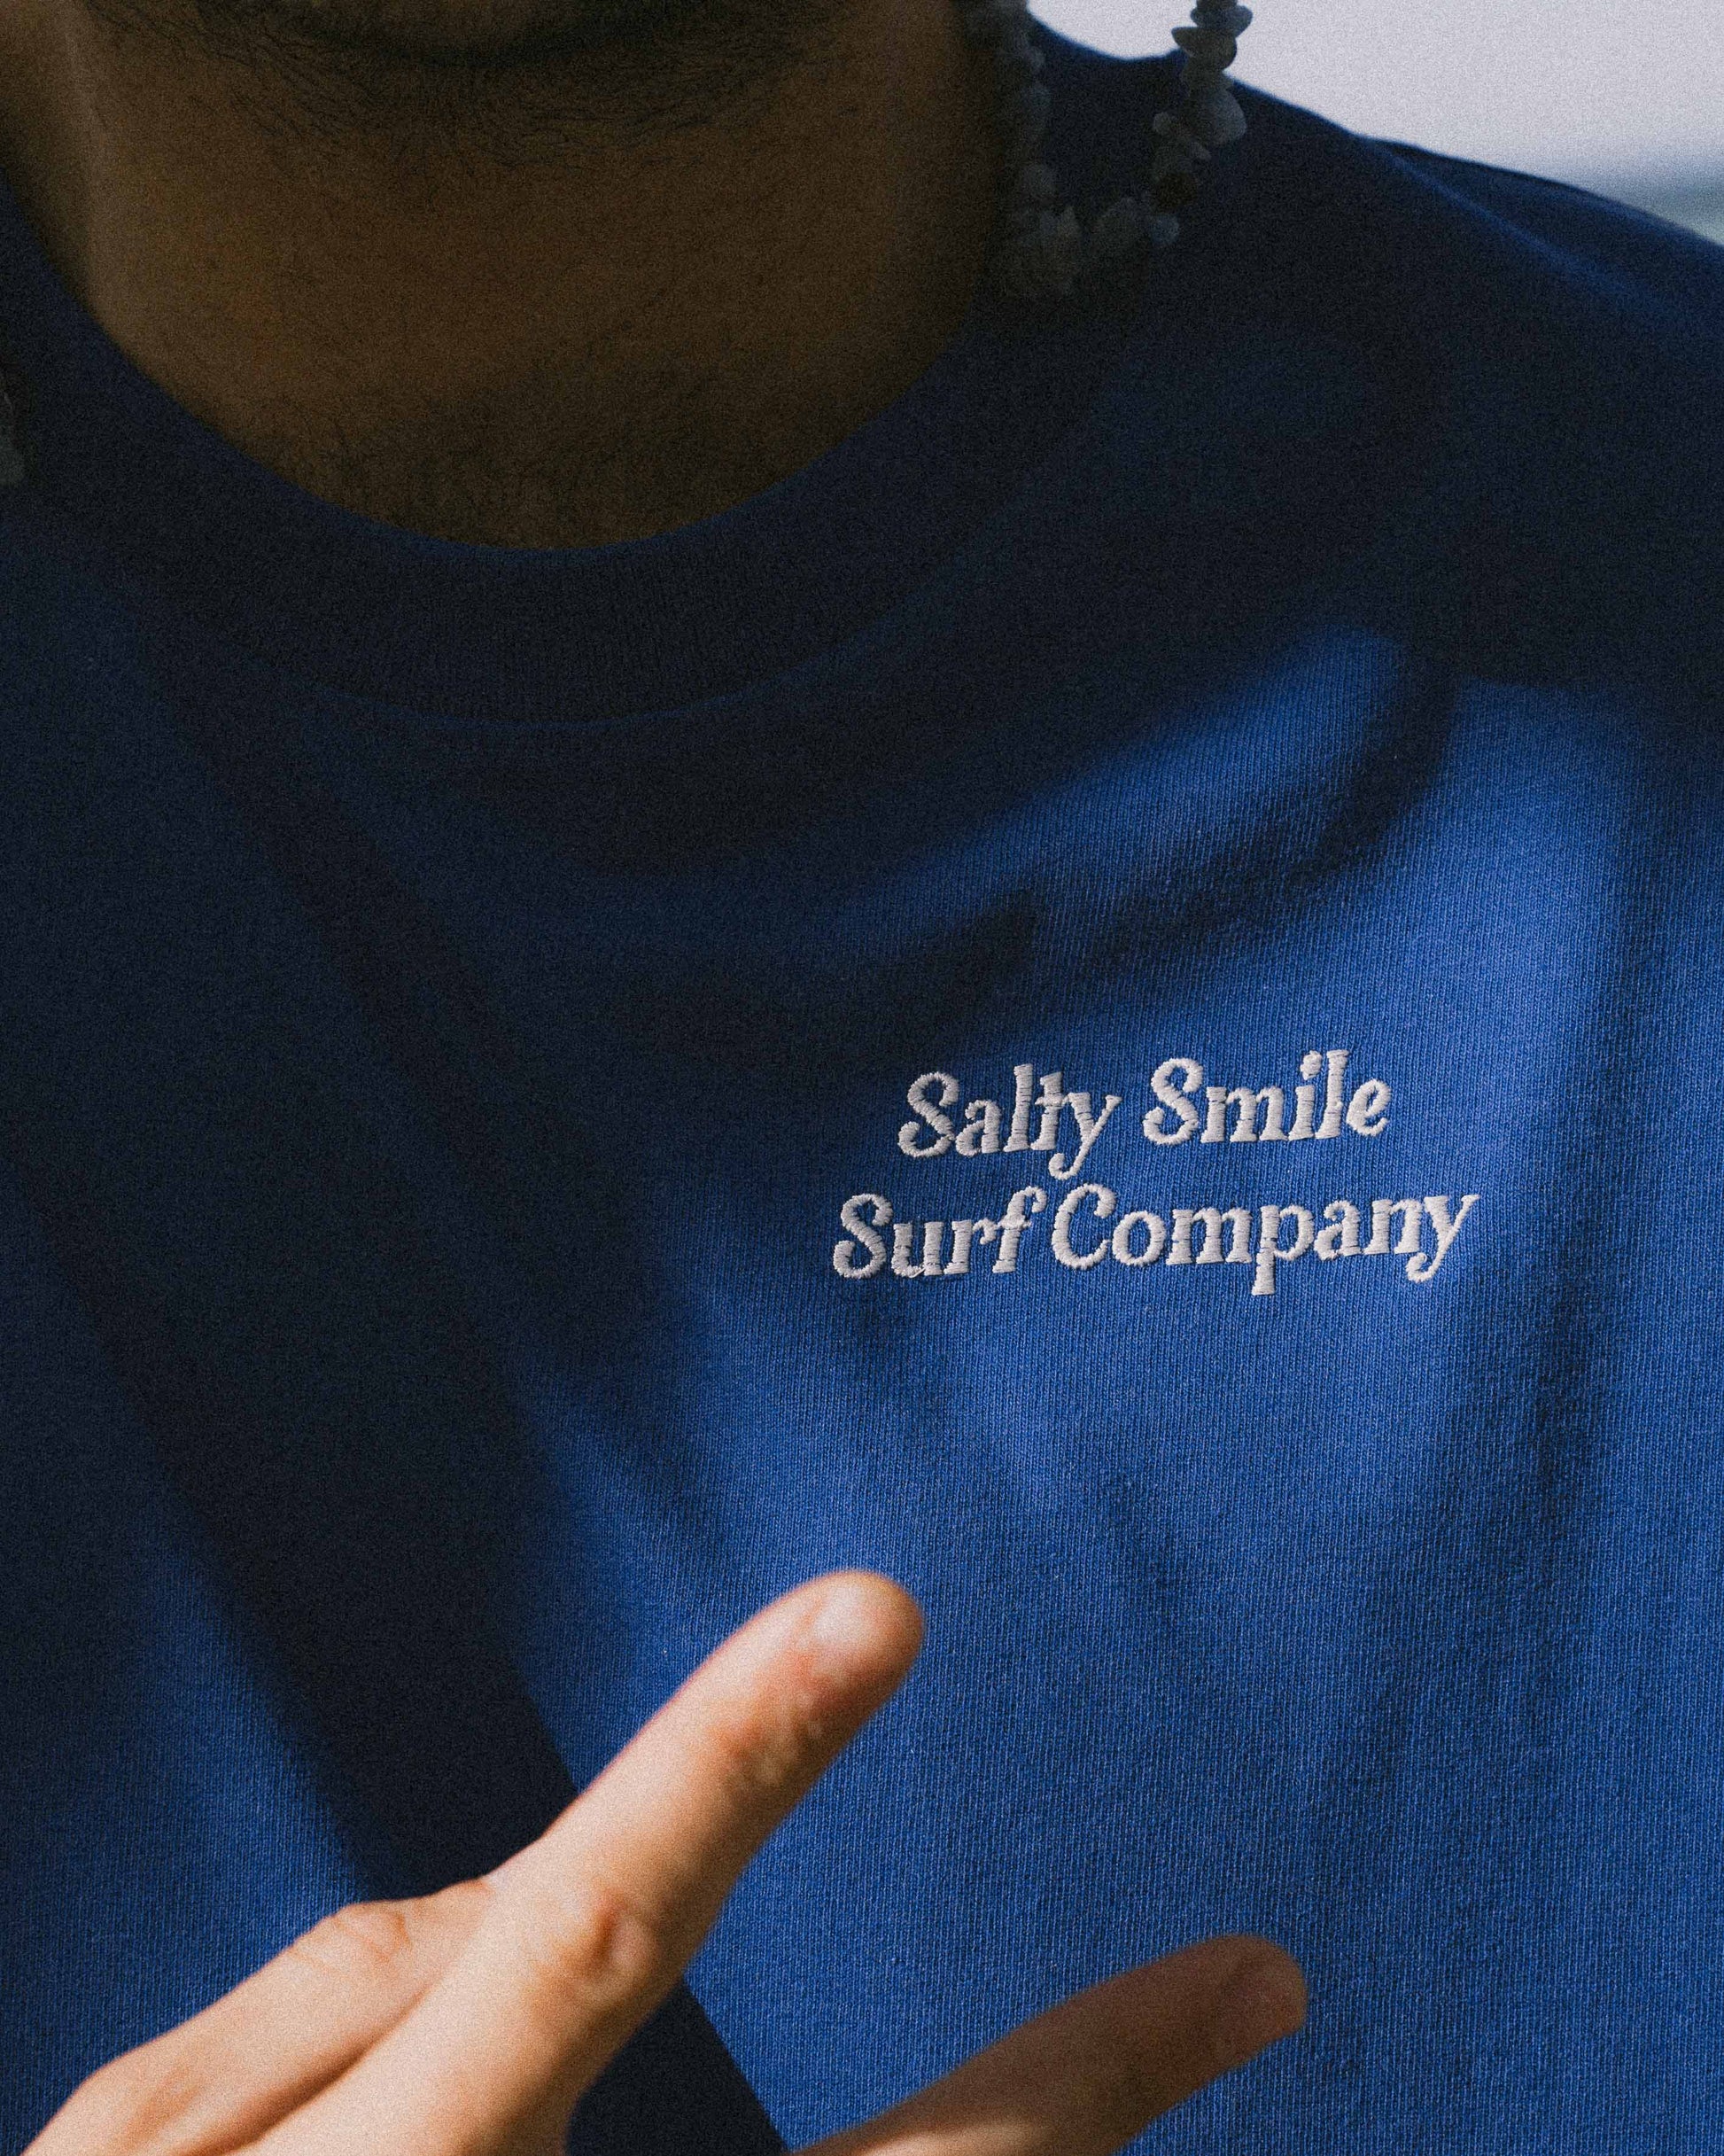 vetements surf salty smile T Shirt Surf Company Bleu marque eco responsable coton bio